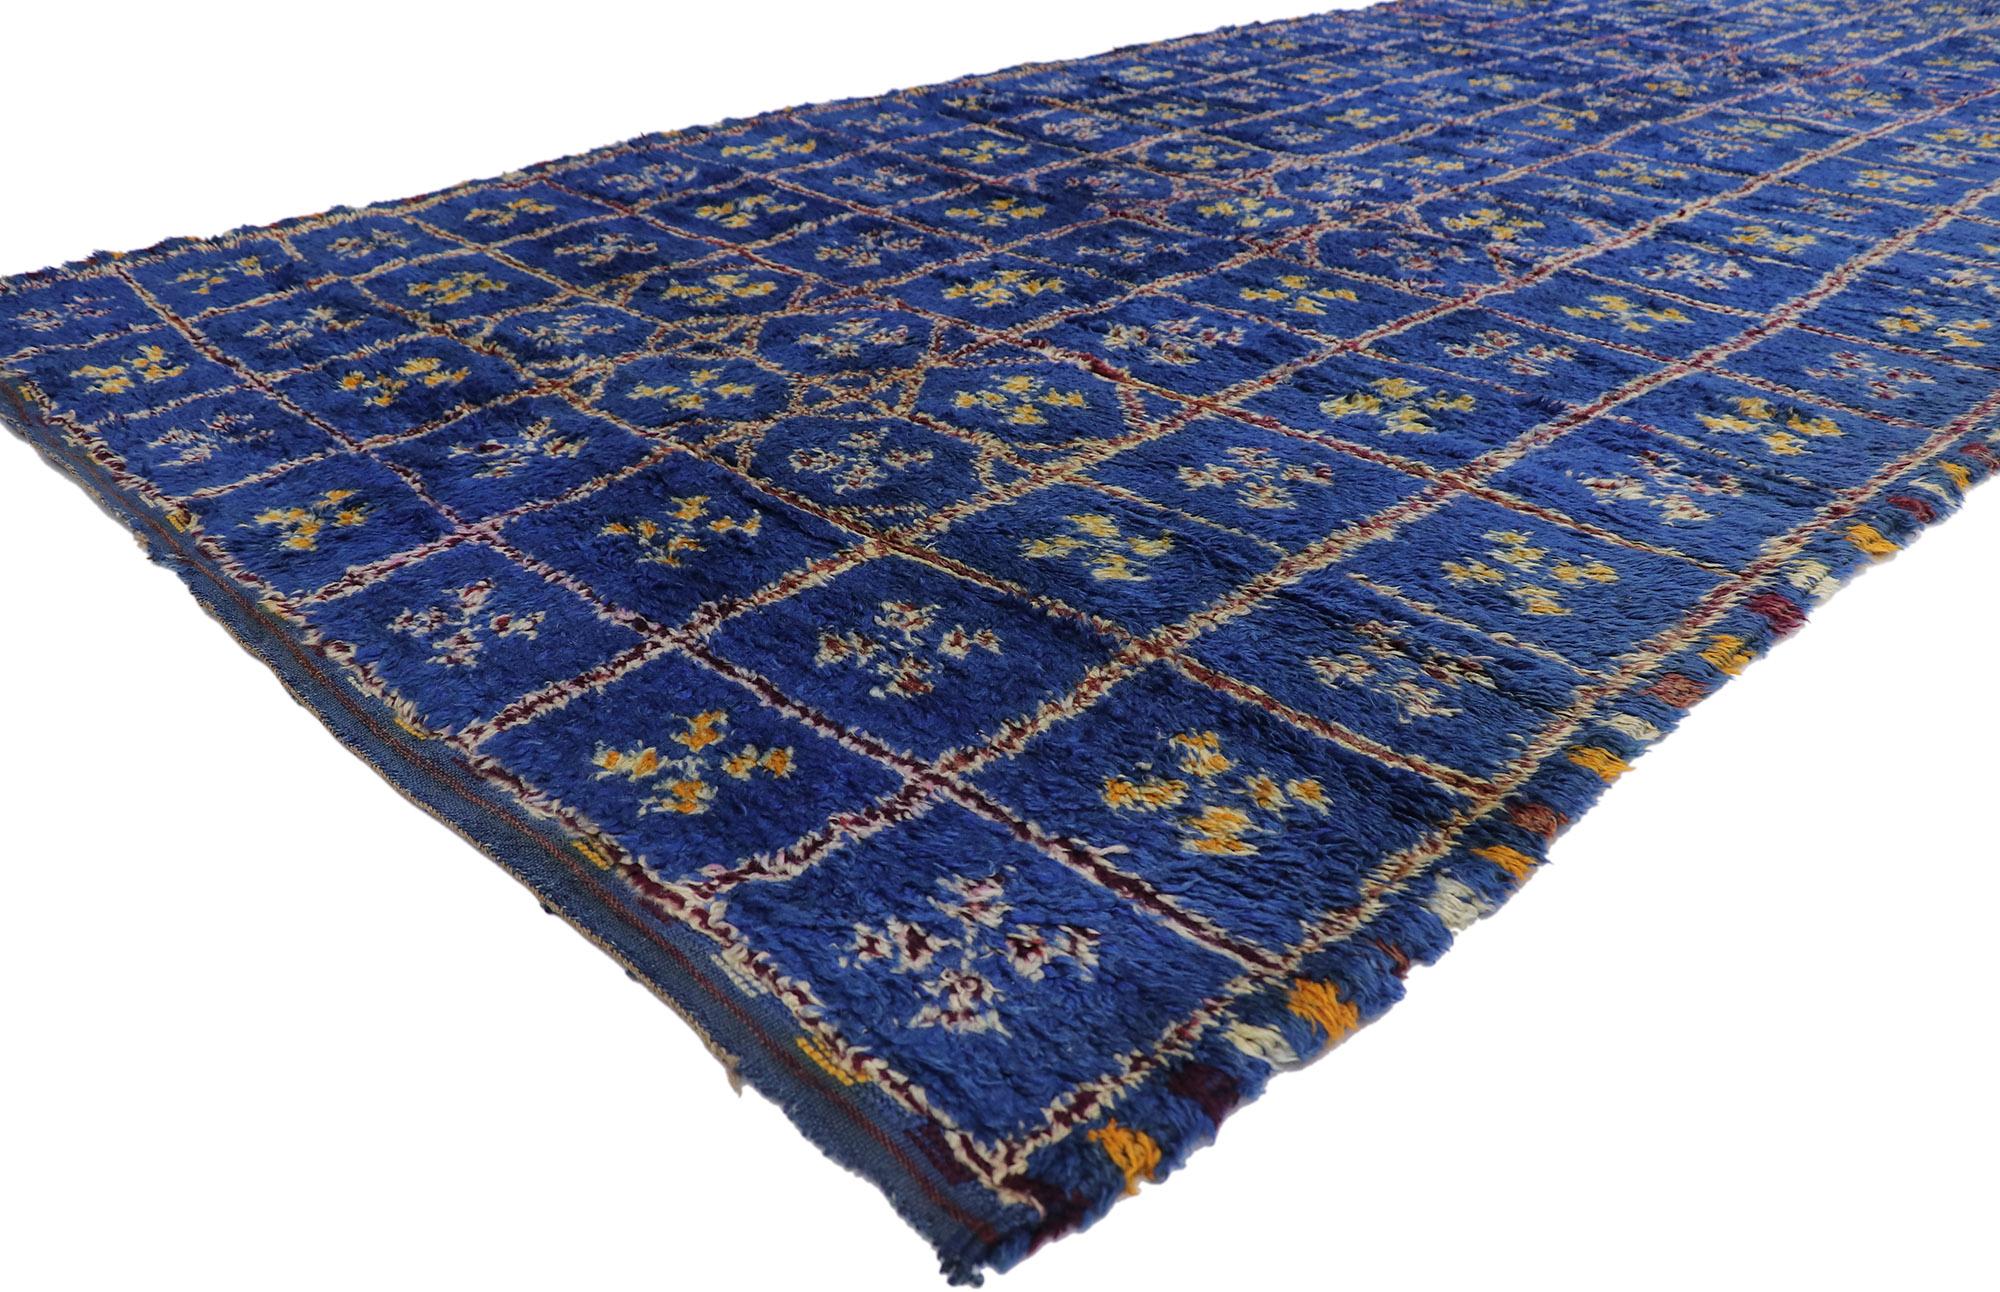 21217 Vintage Berber Blau Beni M'Guild marokkanischen Teppich mit Tribal-Stil 06'02 x 13'09. Mit seinem kühnen, ausdrucksstarken Design, seinen unglaublichen Details und seiner Struktur ist dieser handgeknüpfte, blaue Beni M'Guild Marokko-Teppich